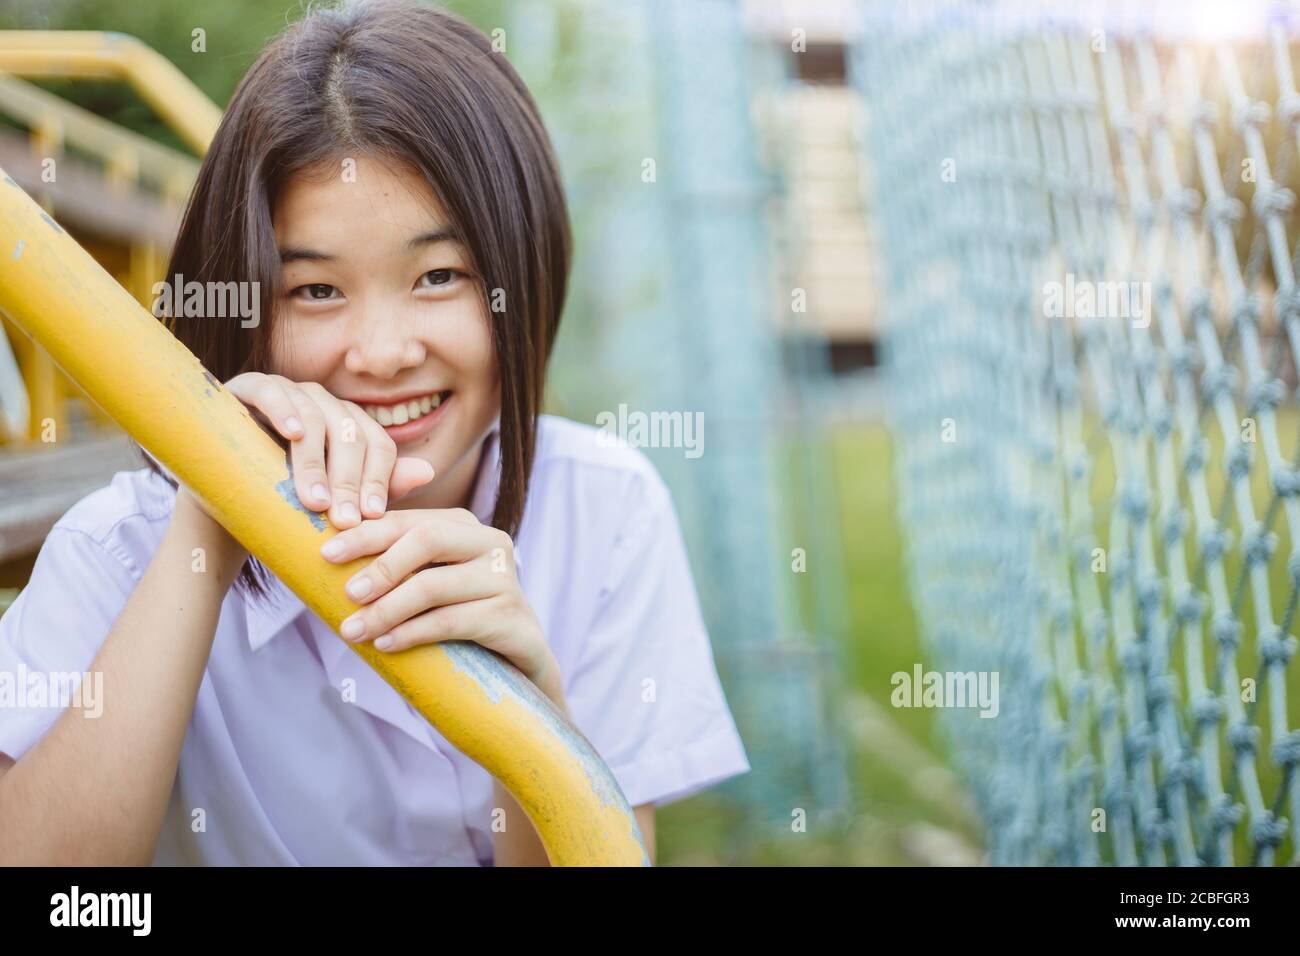 Asiatique étudiant jeune fille innocente timide souriant et regardant l'appareil photo avec espace de copie Banque D'Images